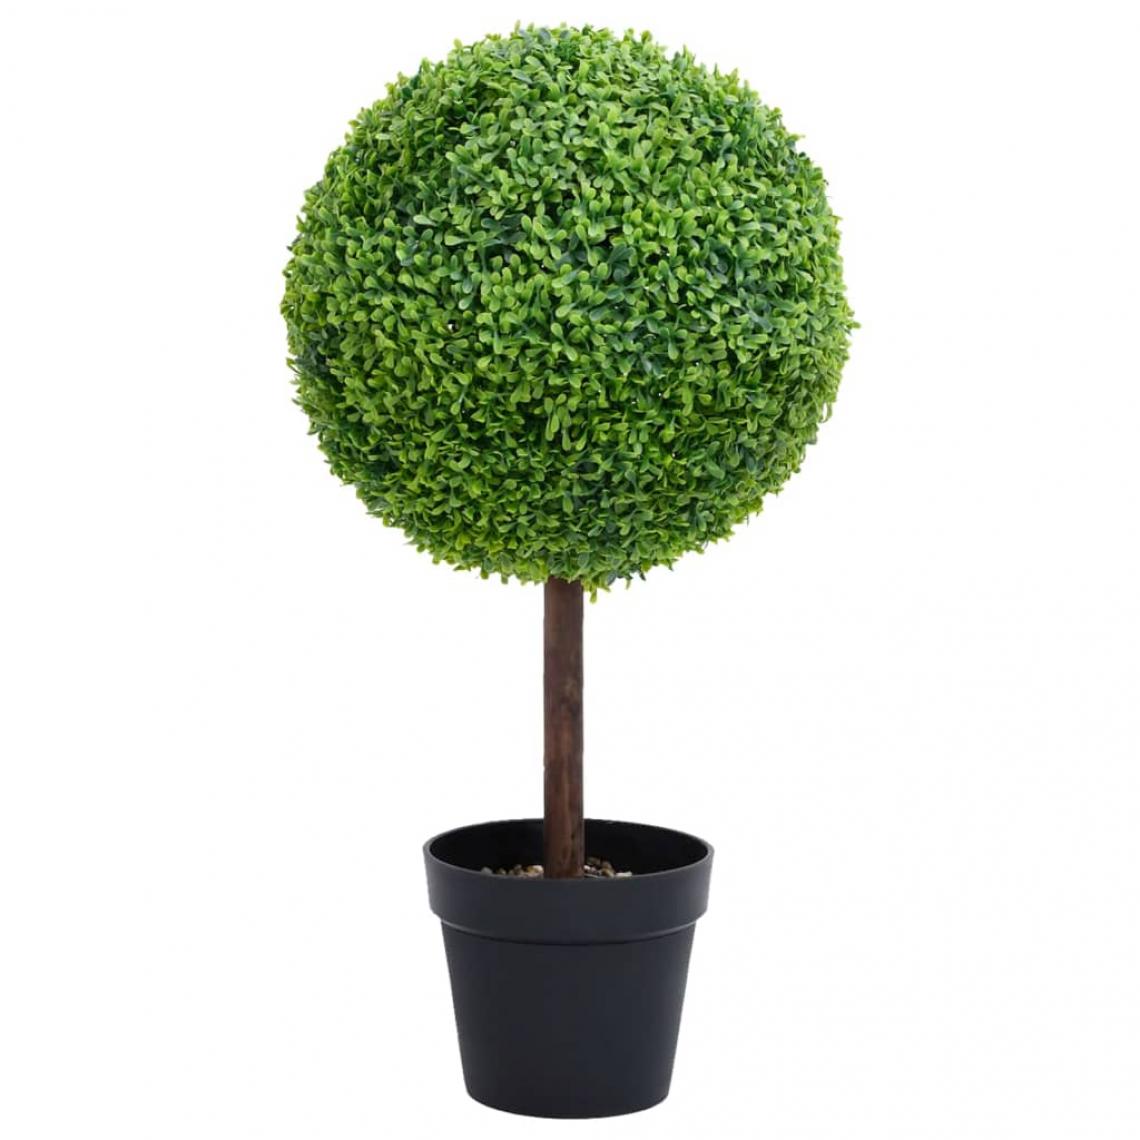 Vidaxl - vidaXL Plante de buis artificiel avec pot Forme de boule Vert 50 cm - Plantes et fleurs artificielles